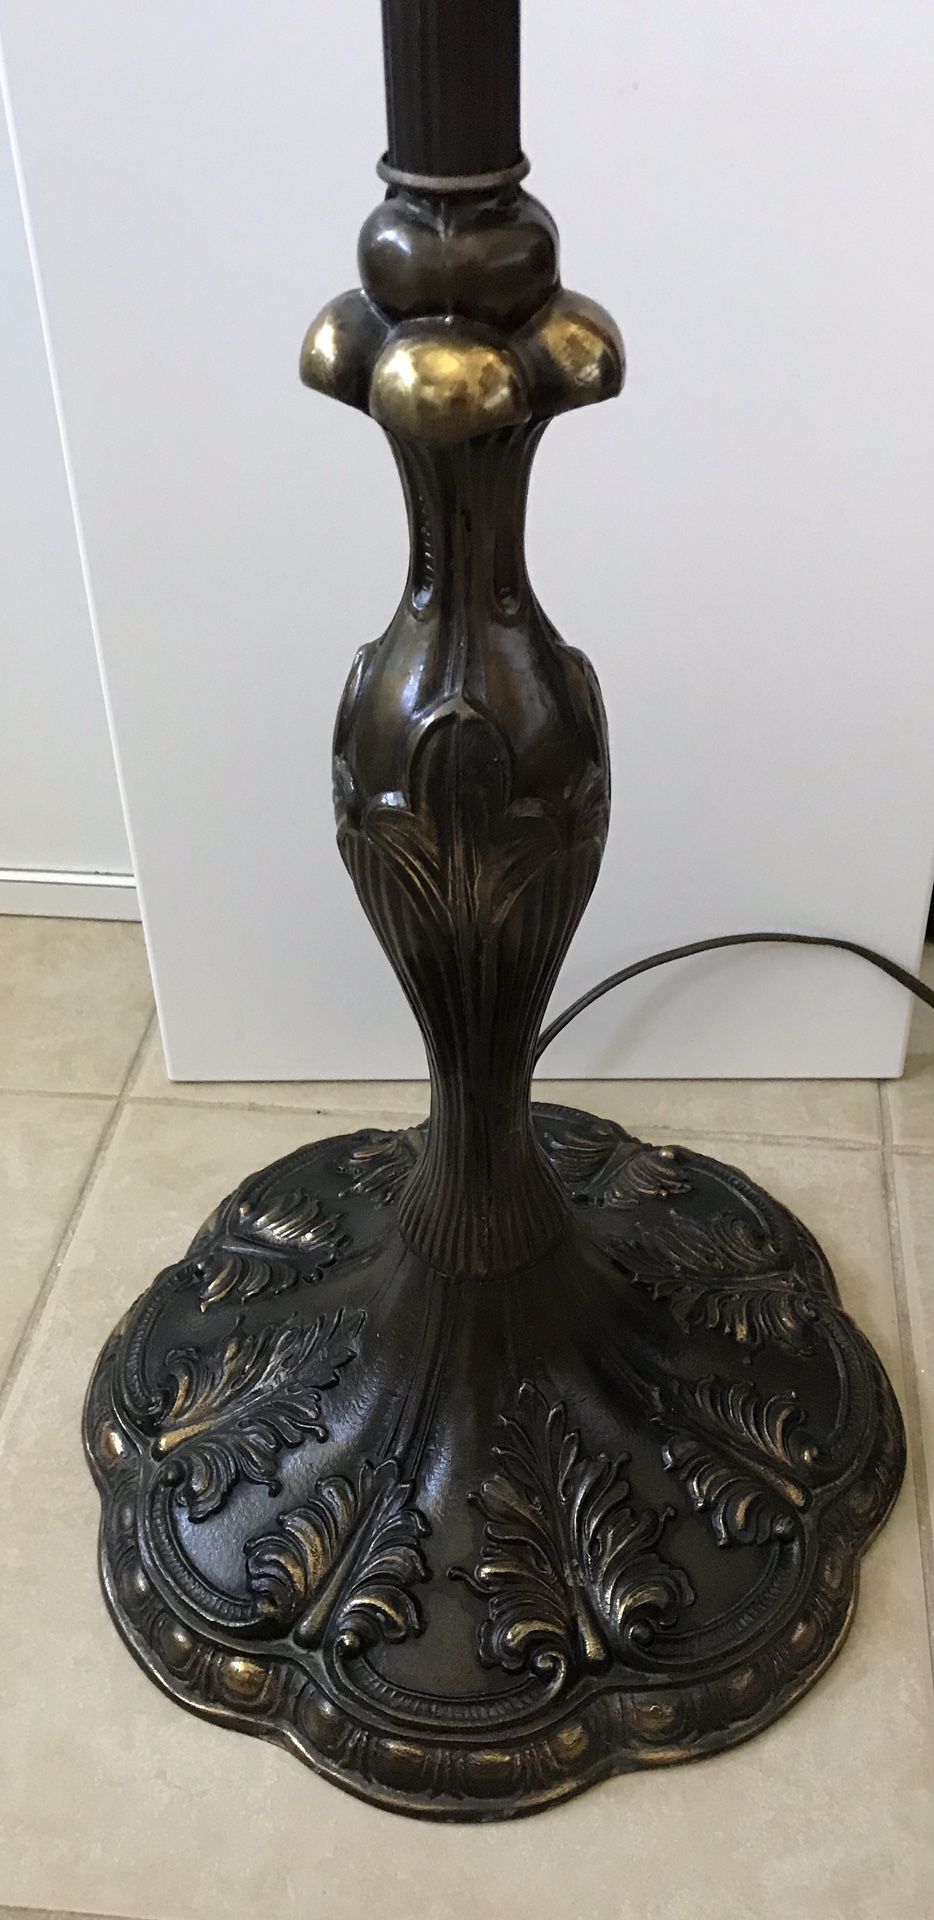 Unique “Vintage” Lamp